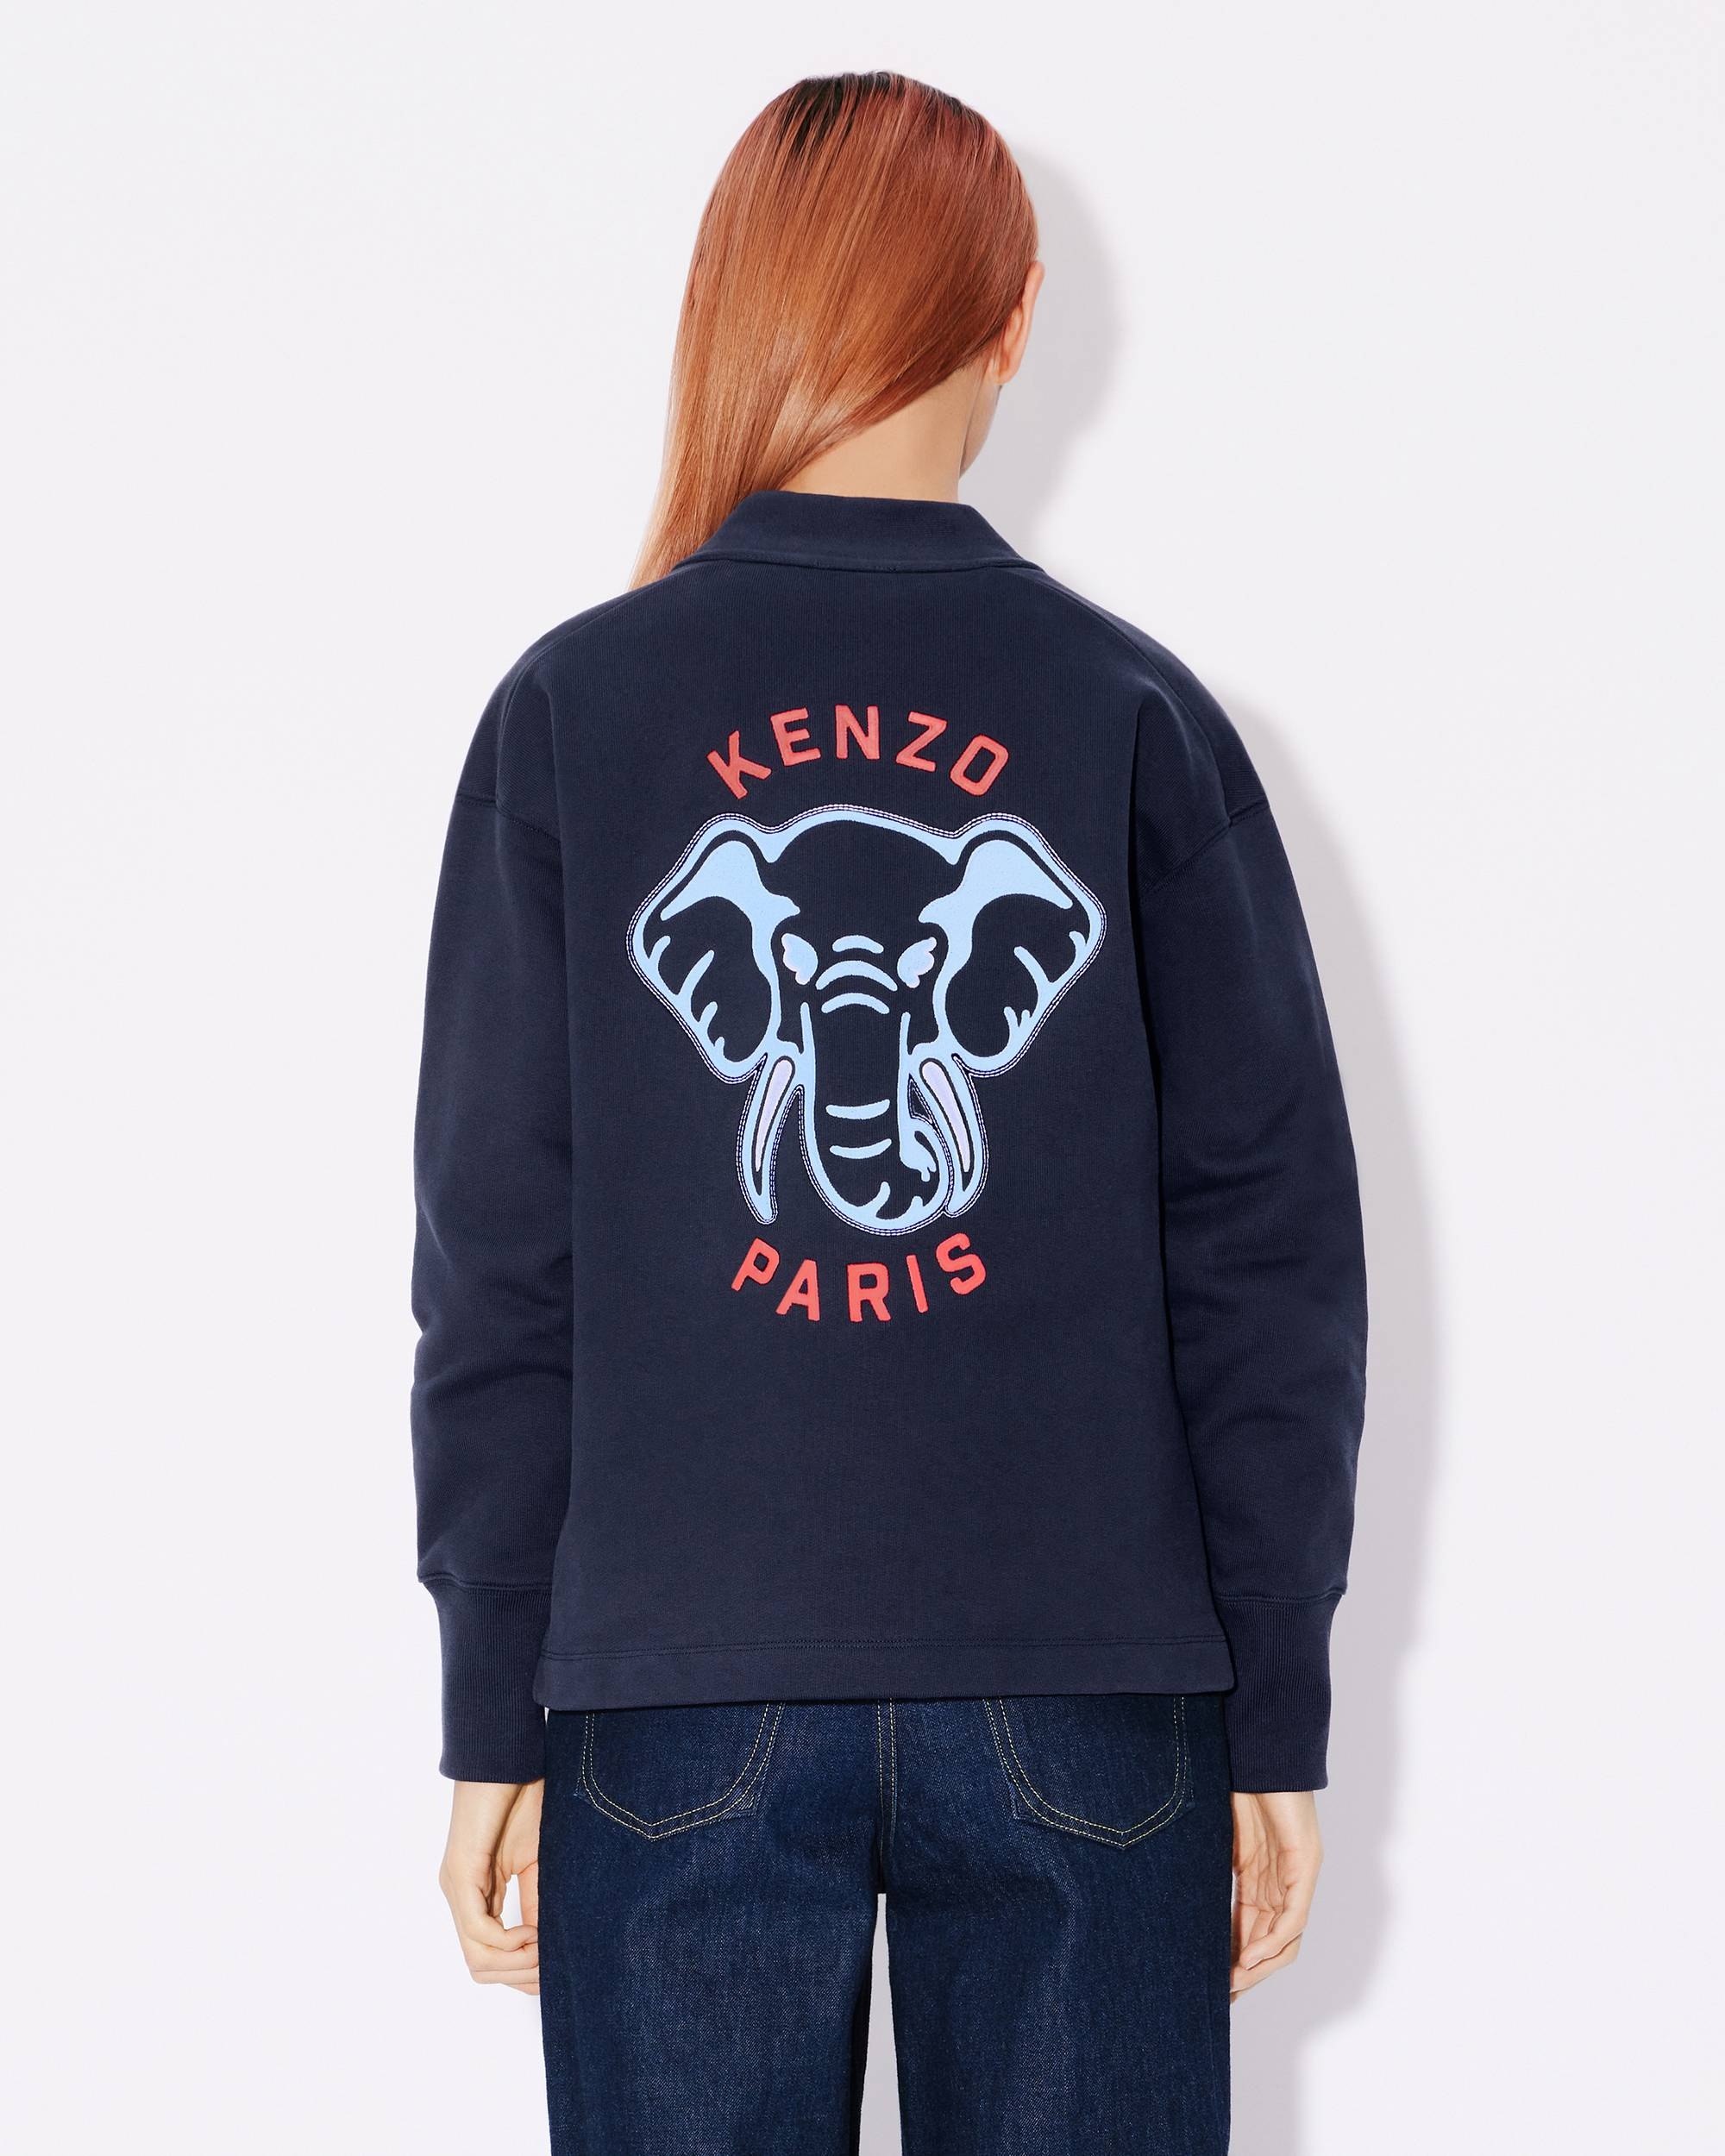 'KENZO Elephant' embroidered sweatshirt cardigan - 4